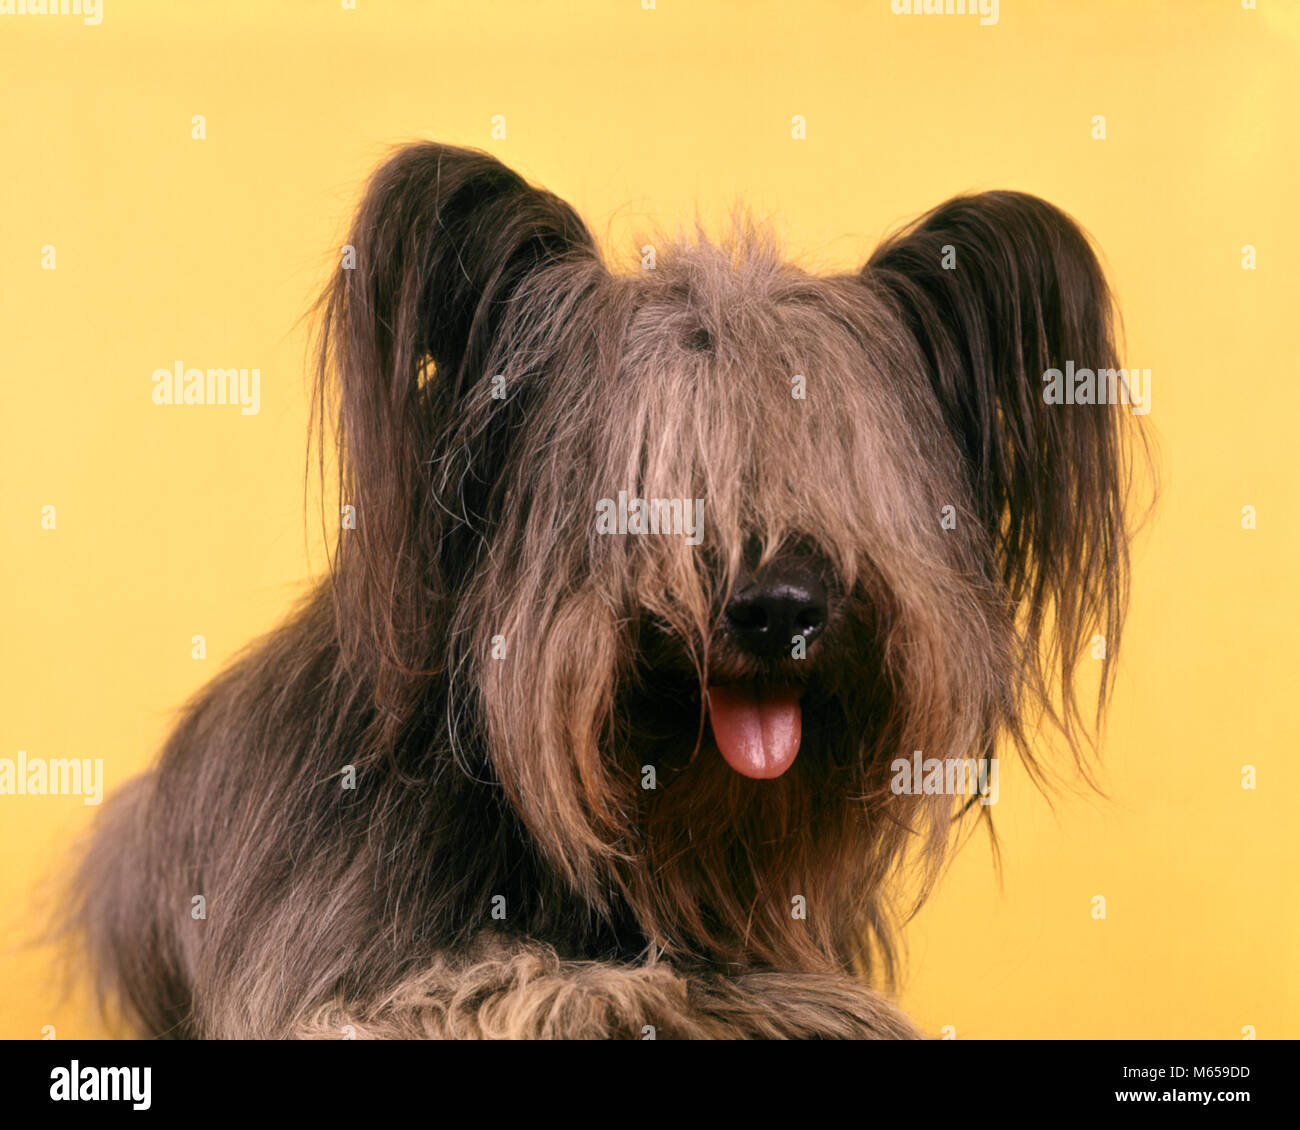 1970 SHAGGY perro terrier pelo muy largo vertical fuera la lengua - kd2172  HAR001 HARS DESPEINADA Fotografía de stock - Alamy